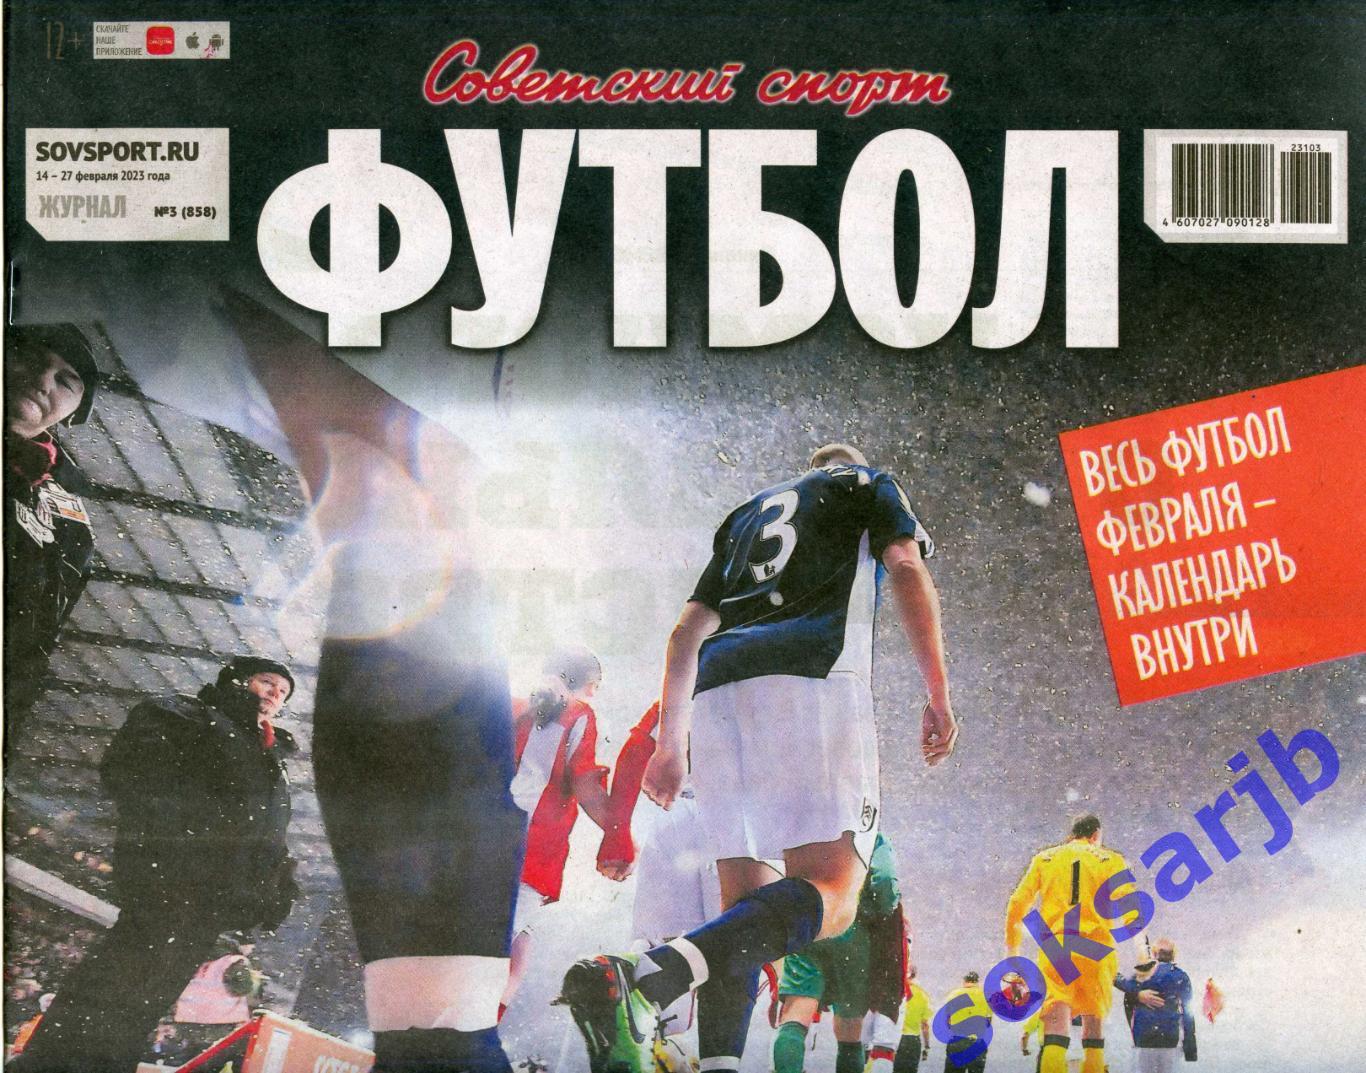 2023. Еженедельник Советский спорт - Футбол № 3 (858).